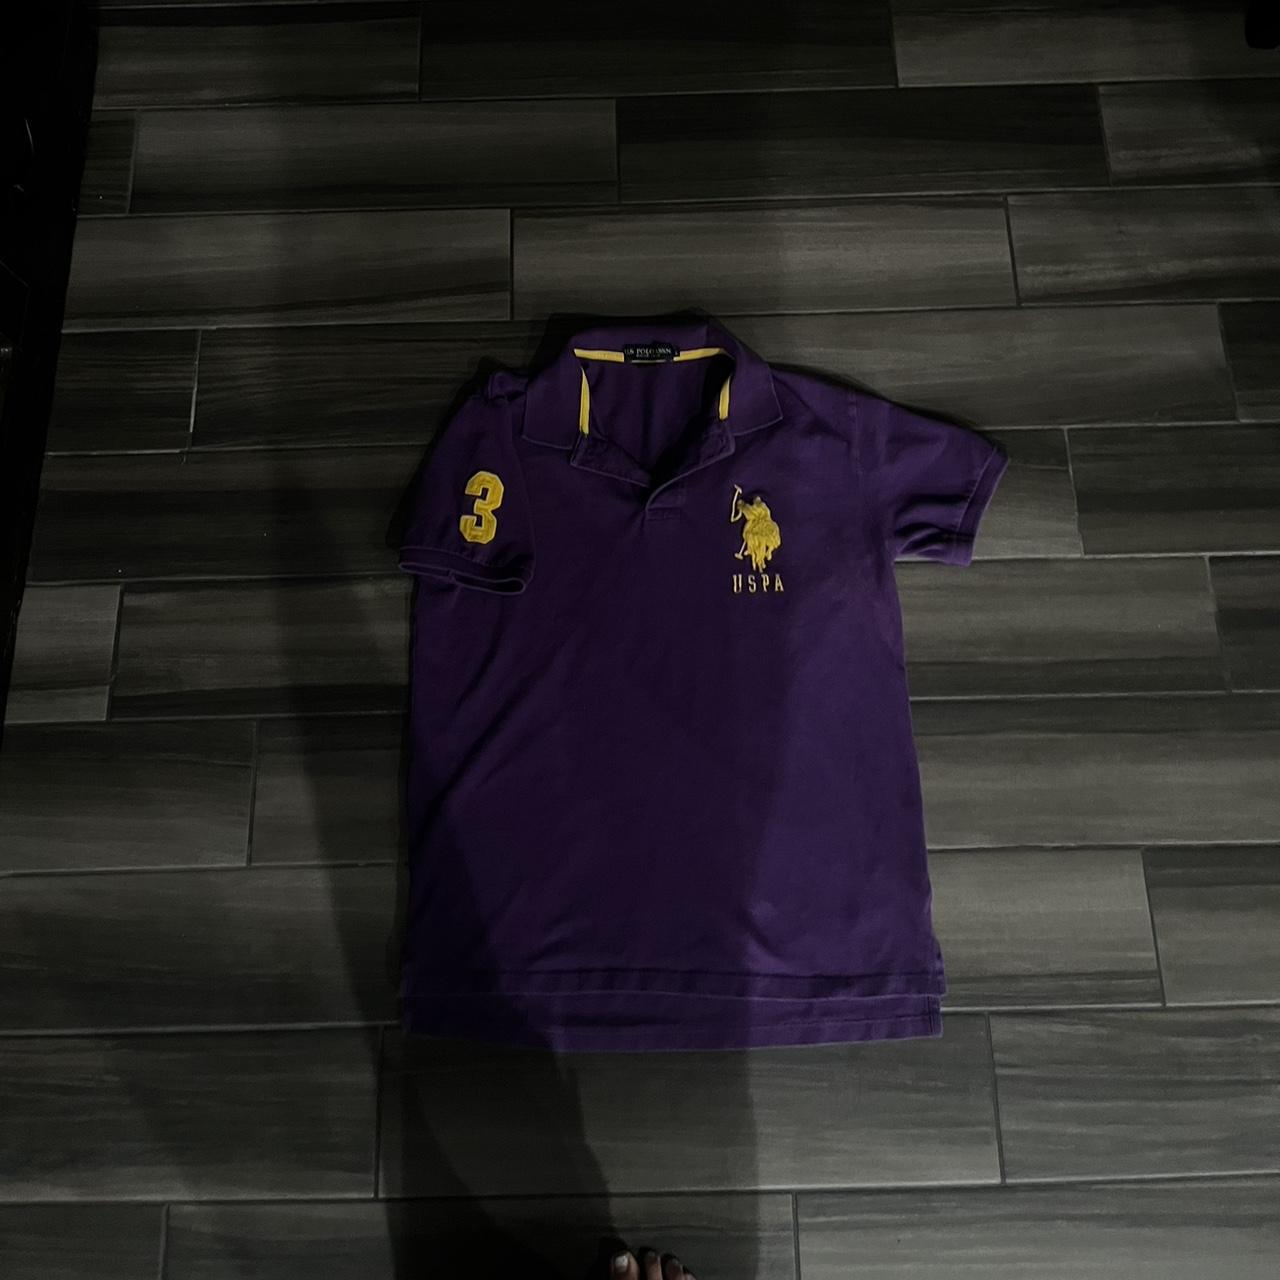 Size large polo purple shirt Like new uspa logo... - Depop